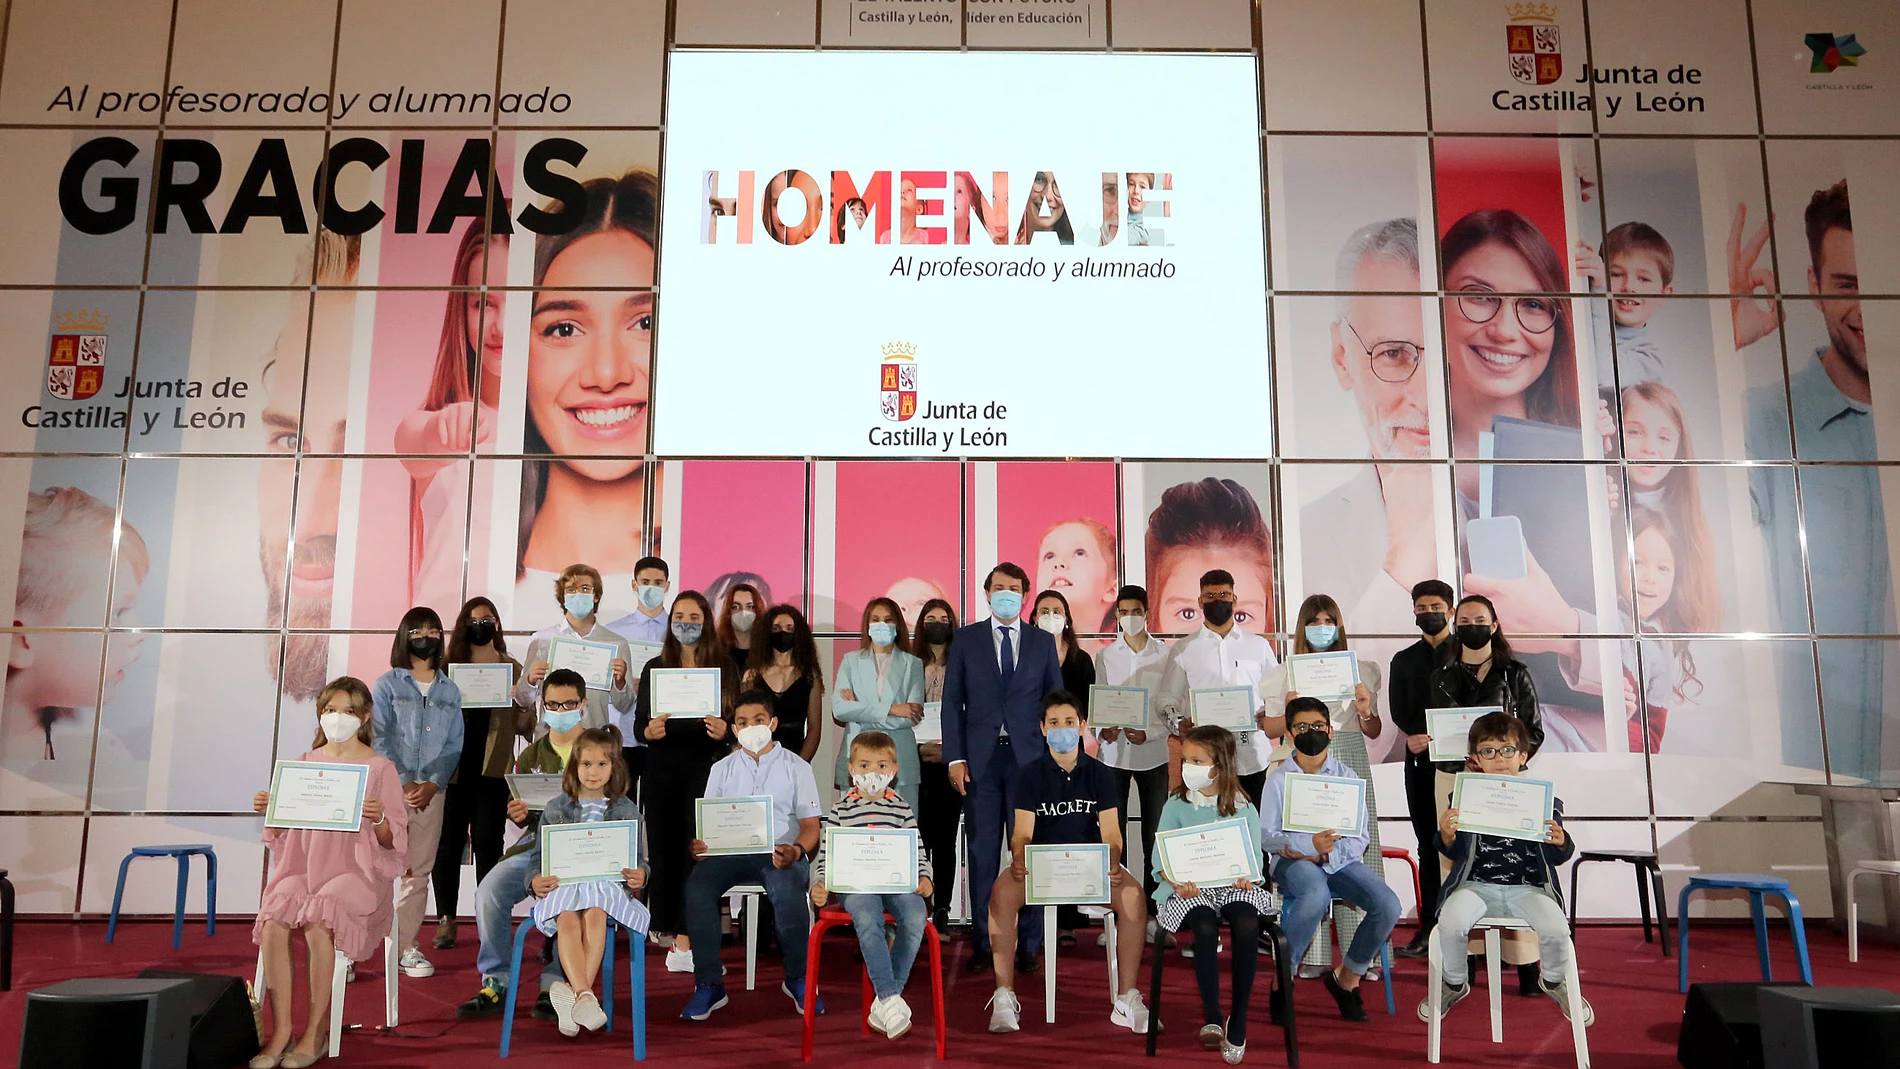 El presidente de la Junta de Castilla y León, Alfonso Fernández Mañueco, , preside el acto de homenaje al profesorado y alumnado de la Comunidad